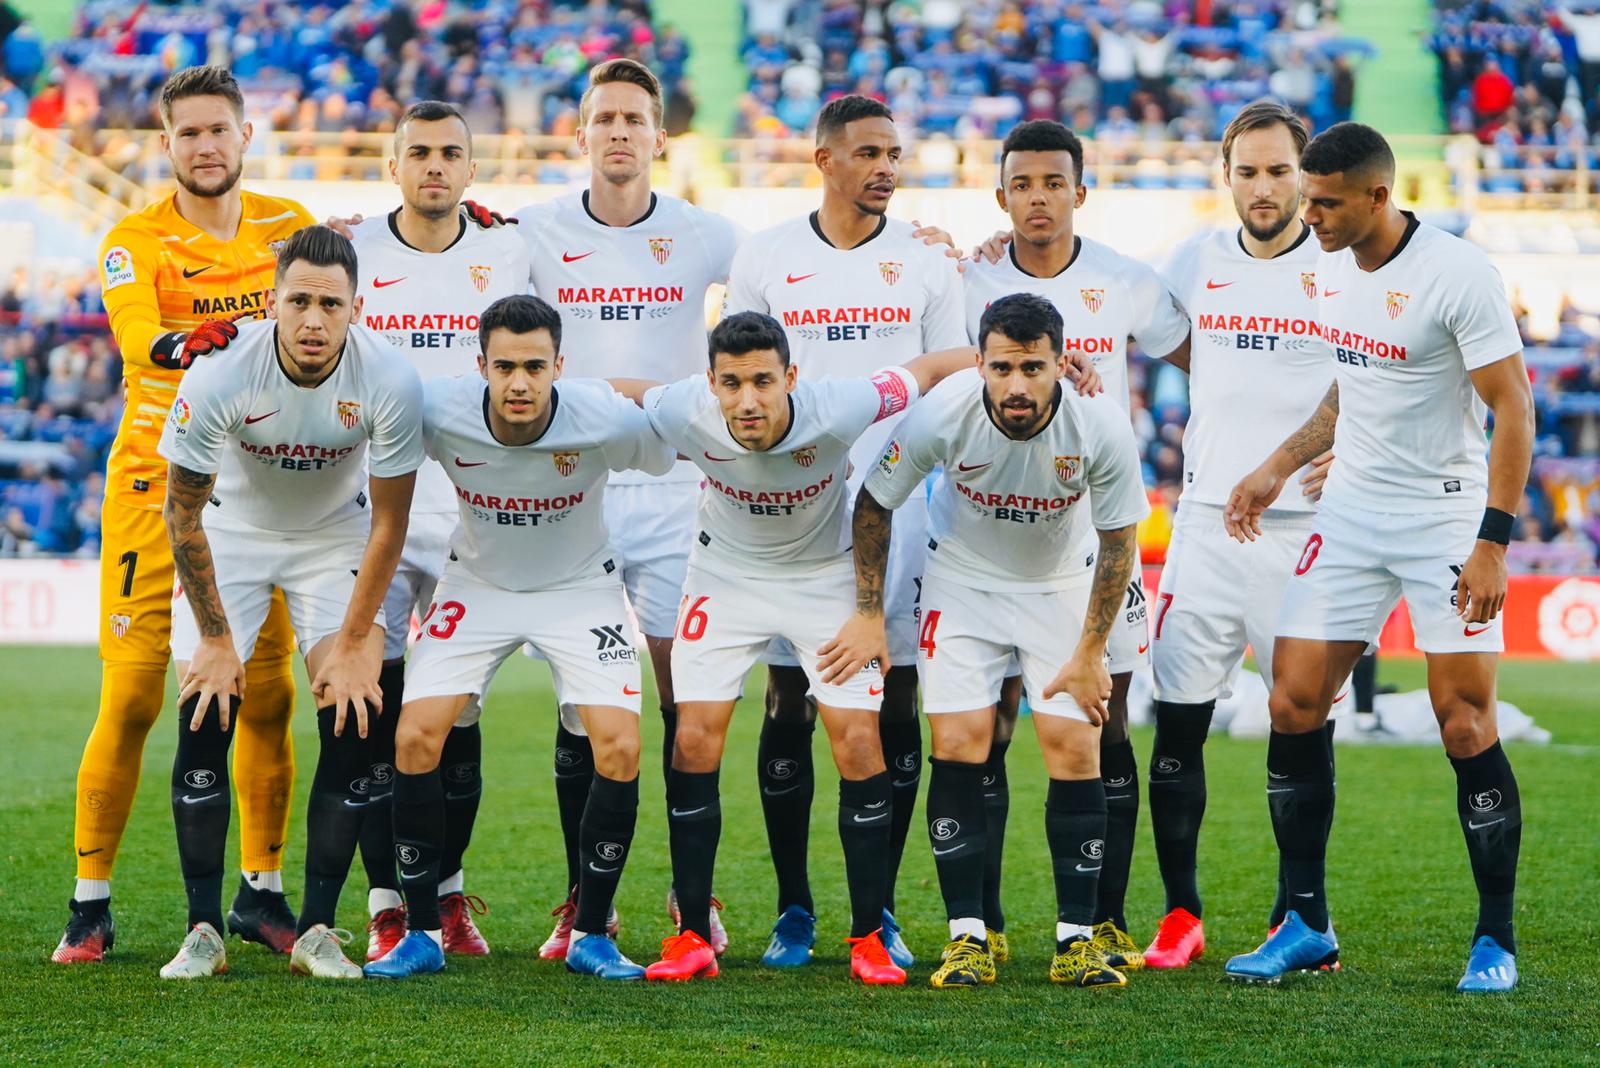 Sevilla FC's starting line-up against Getafe CF